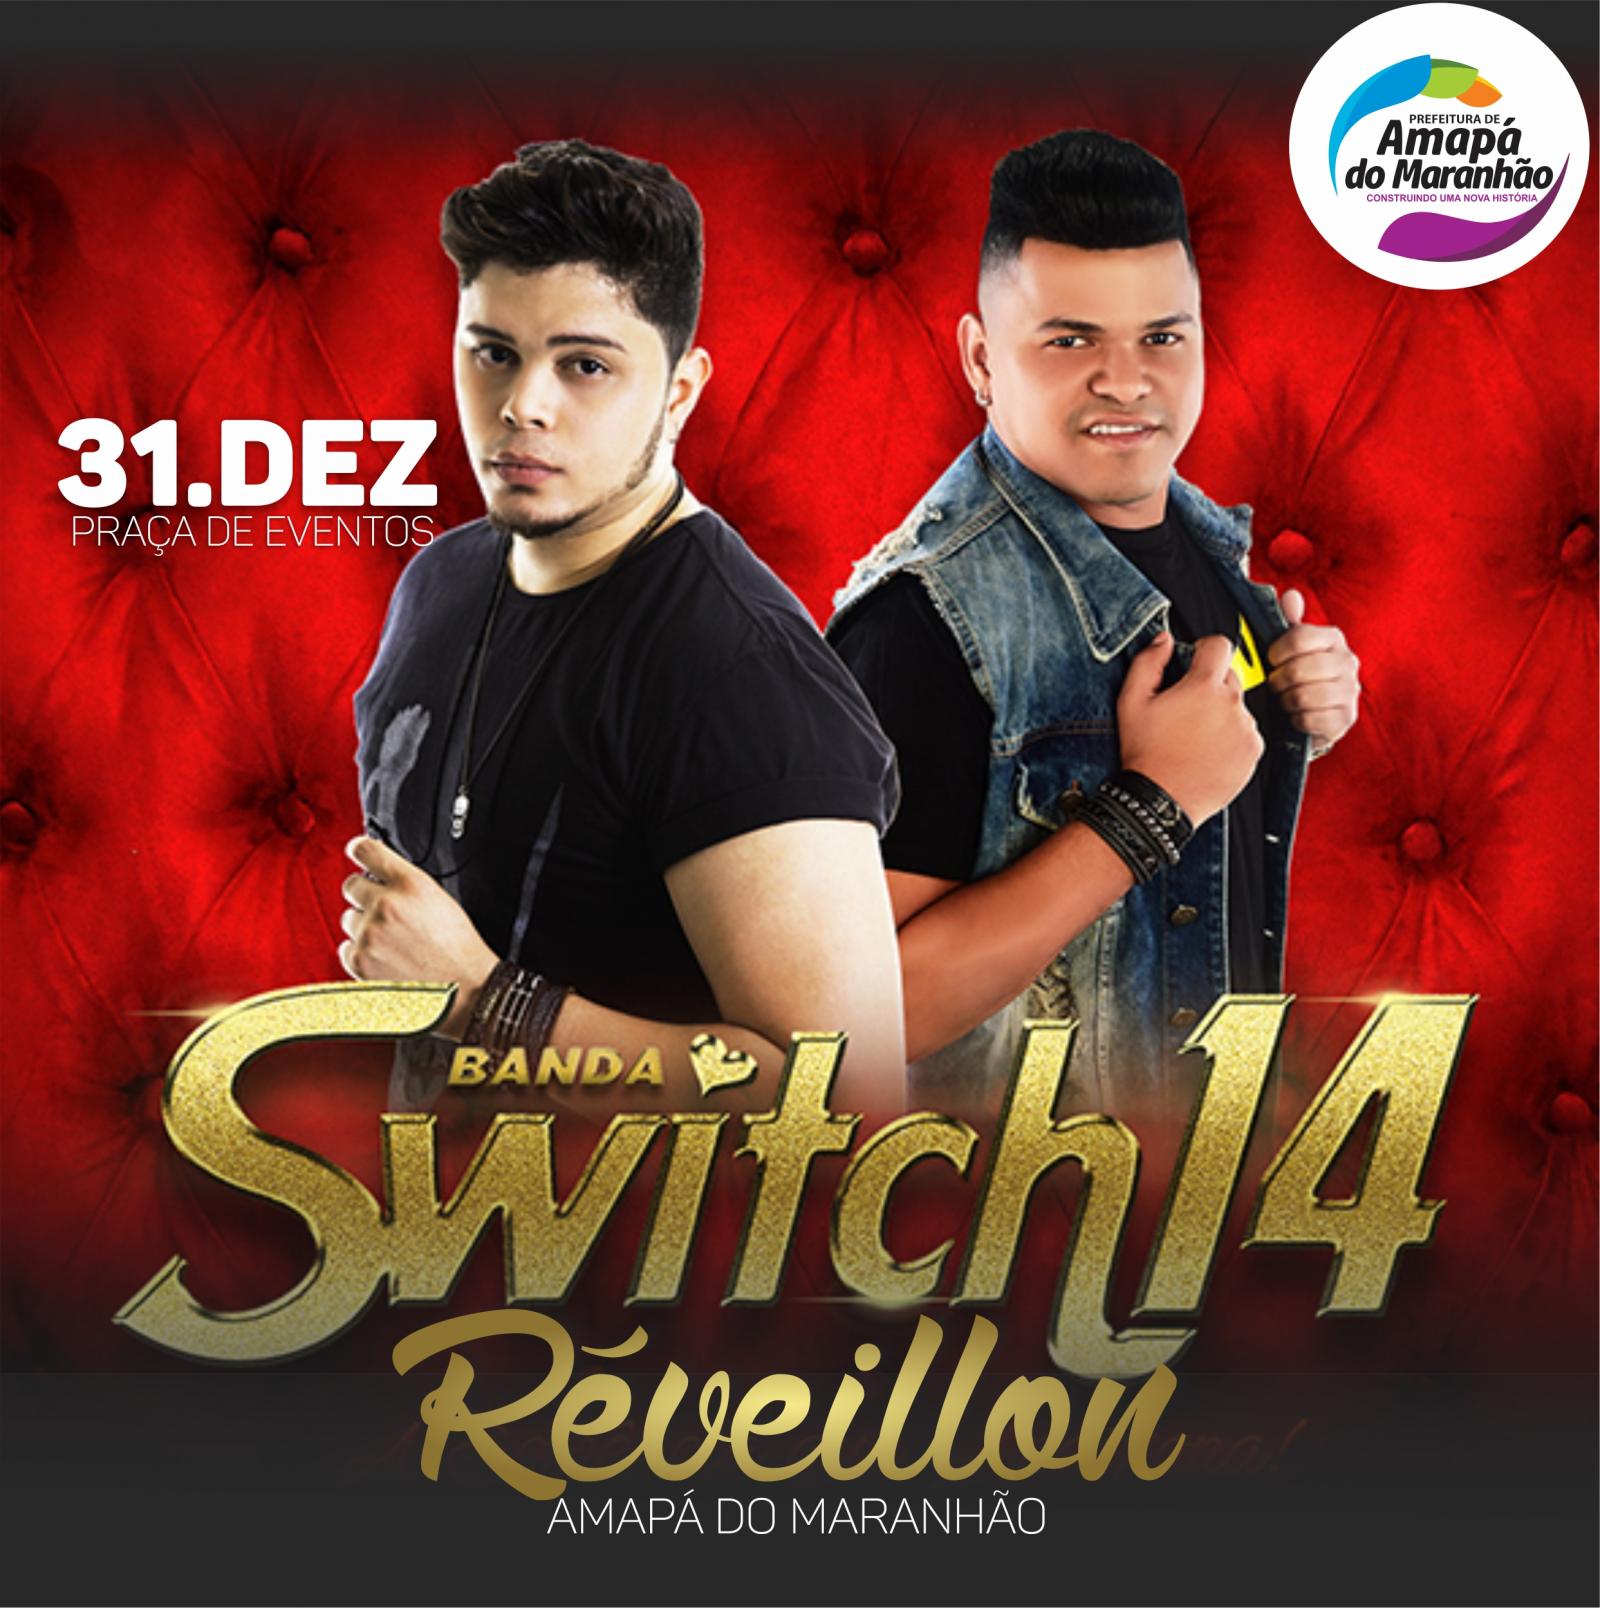 Réveillon 2019 de Amapá do Maranhão será com a Banda Switch 14